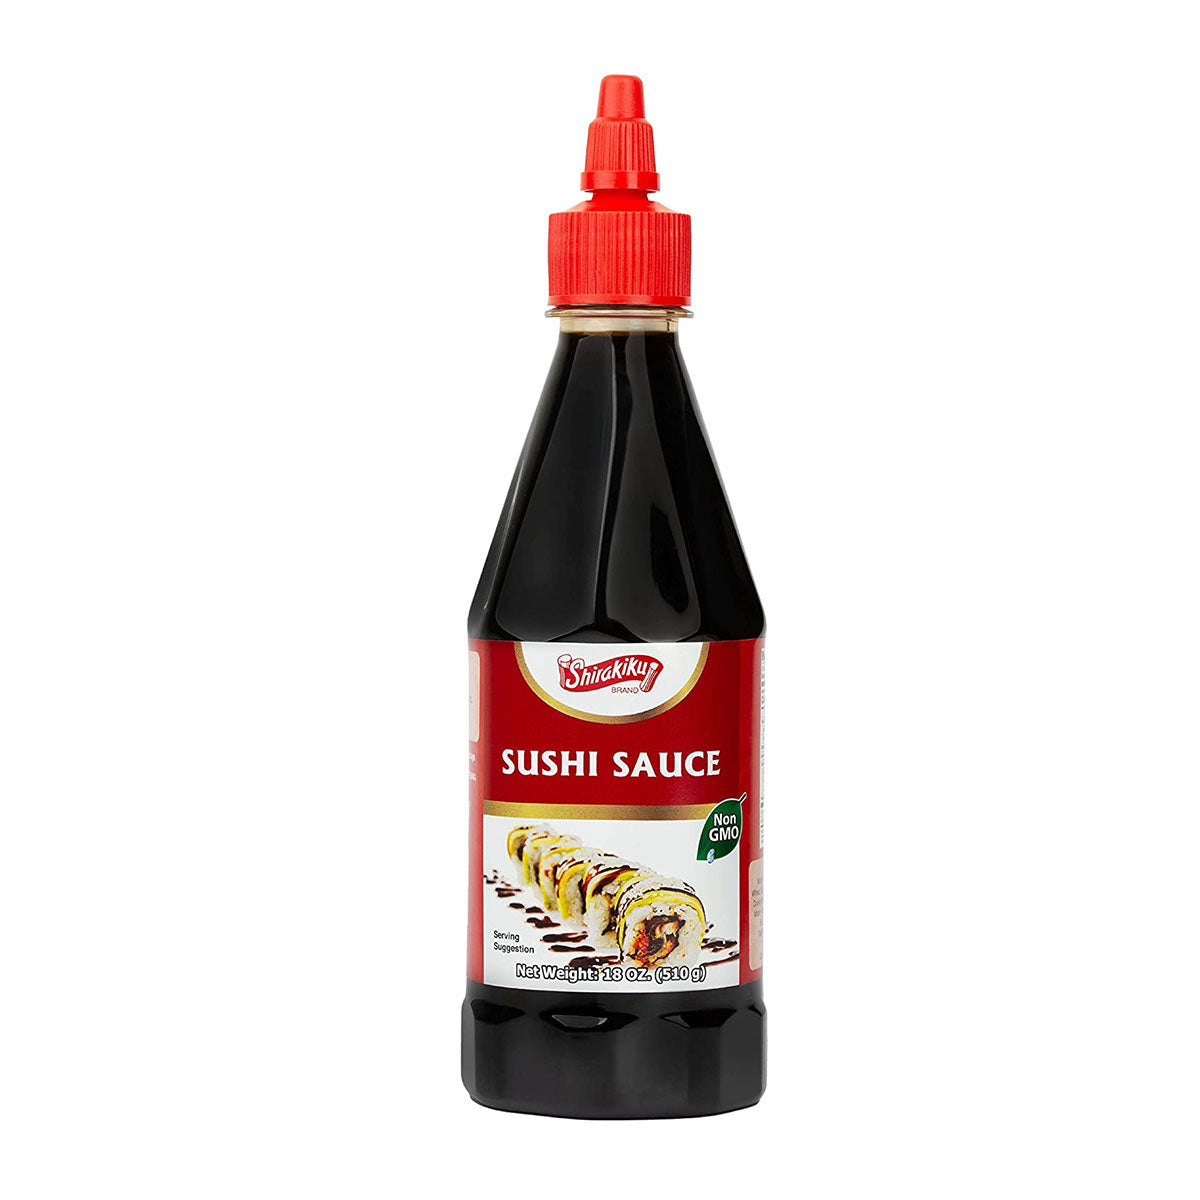 shirakiku sushi eel sauce - 18oz